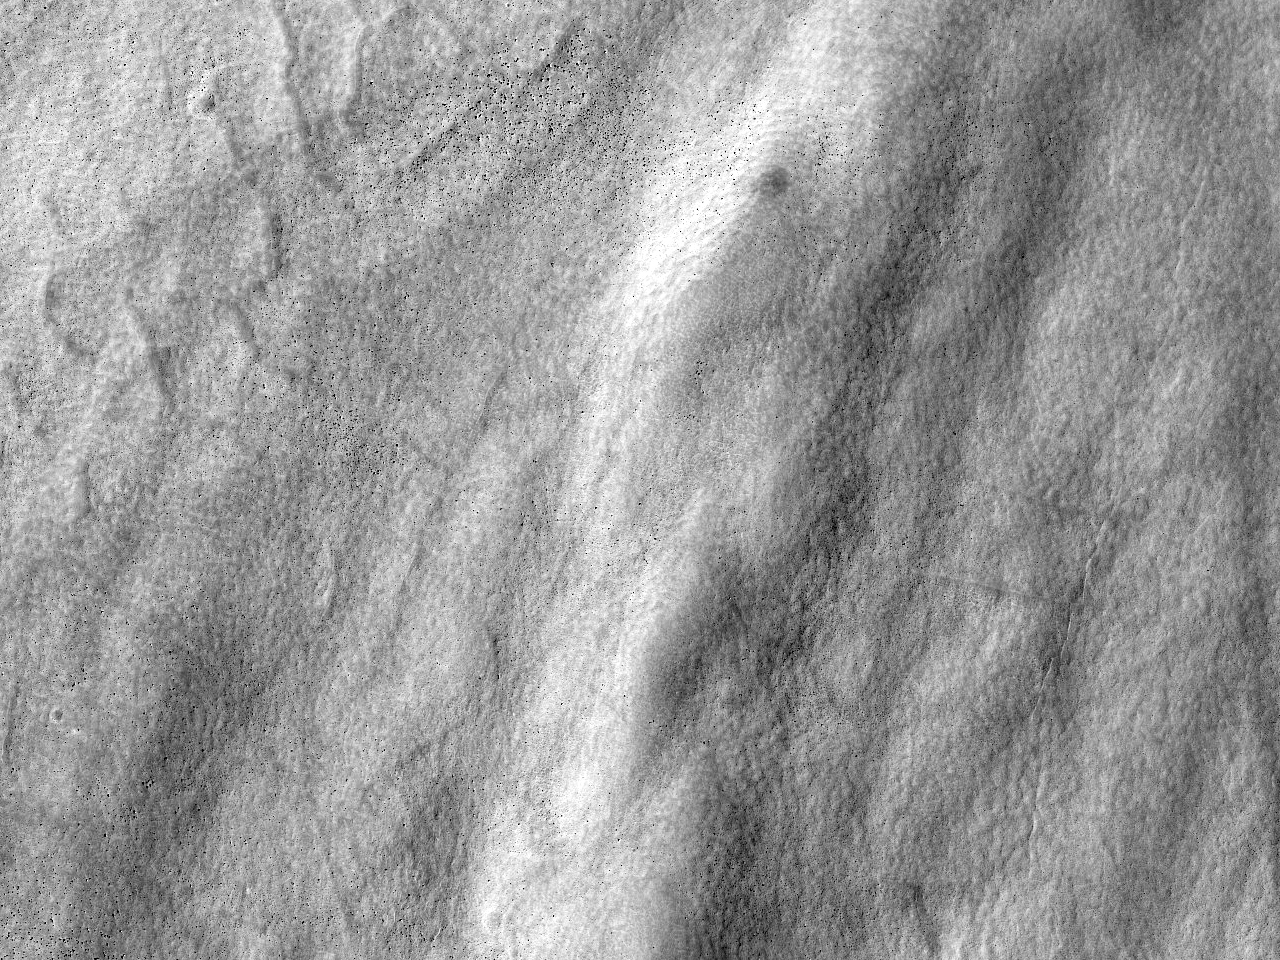 Longa malaltaĵo en suda kratero